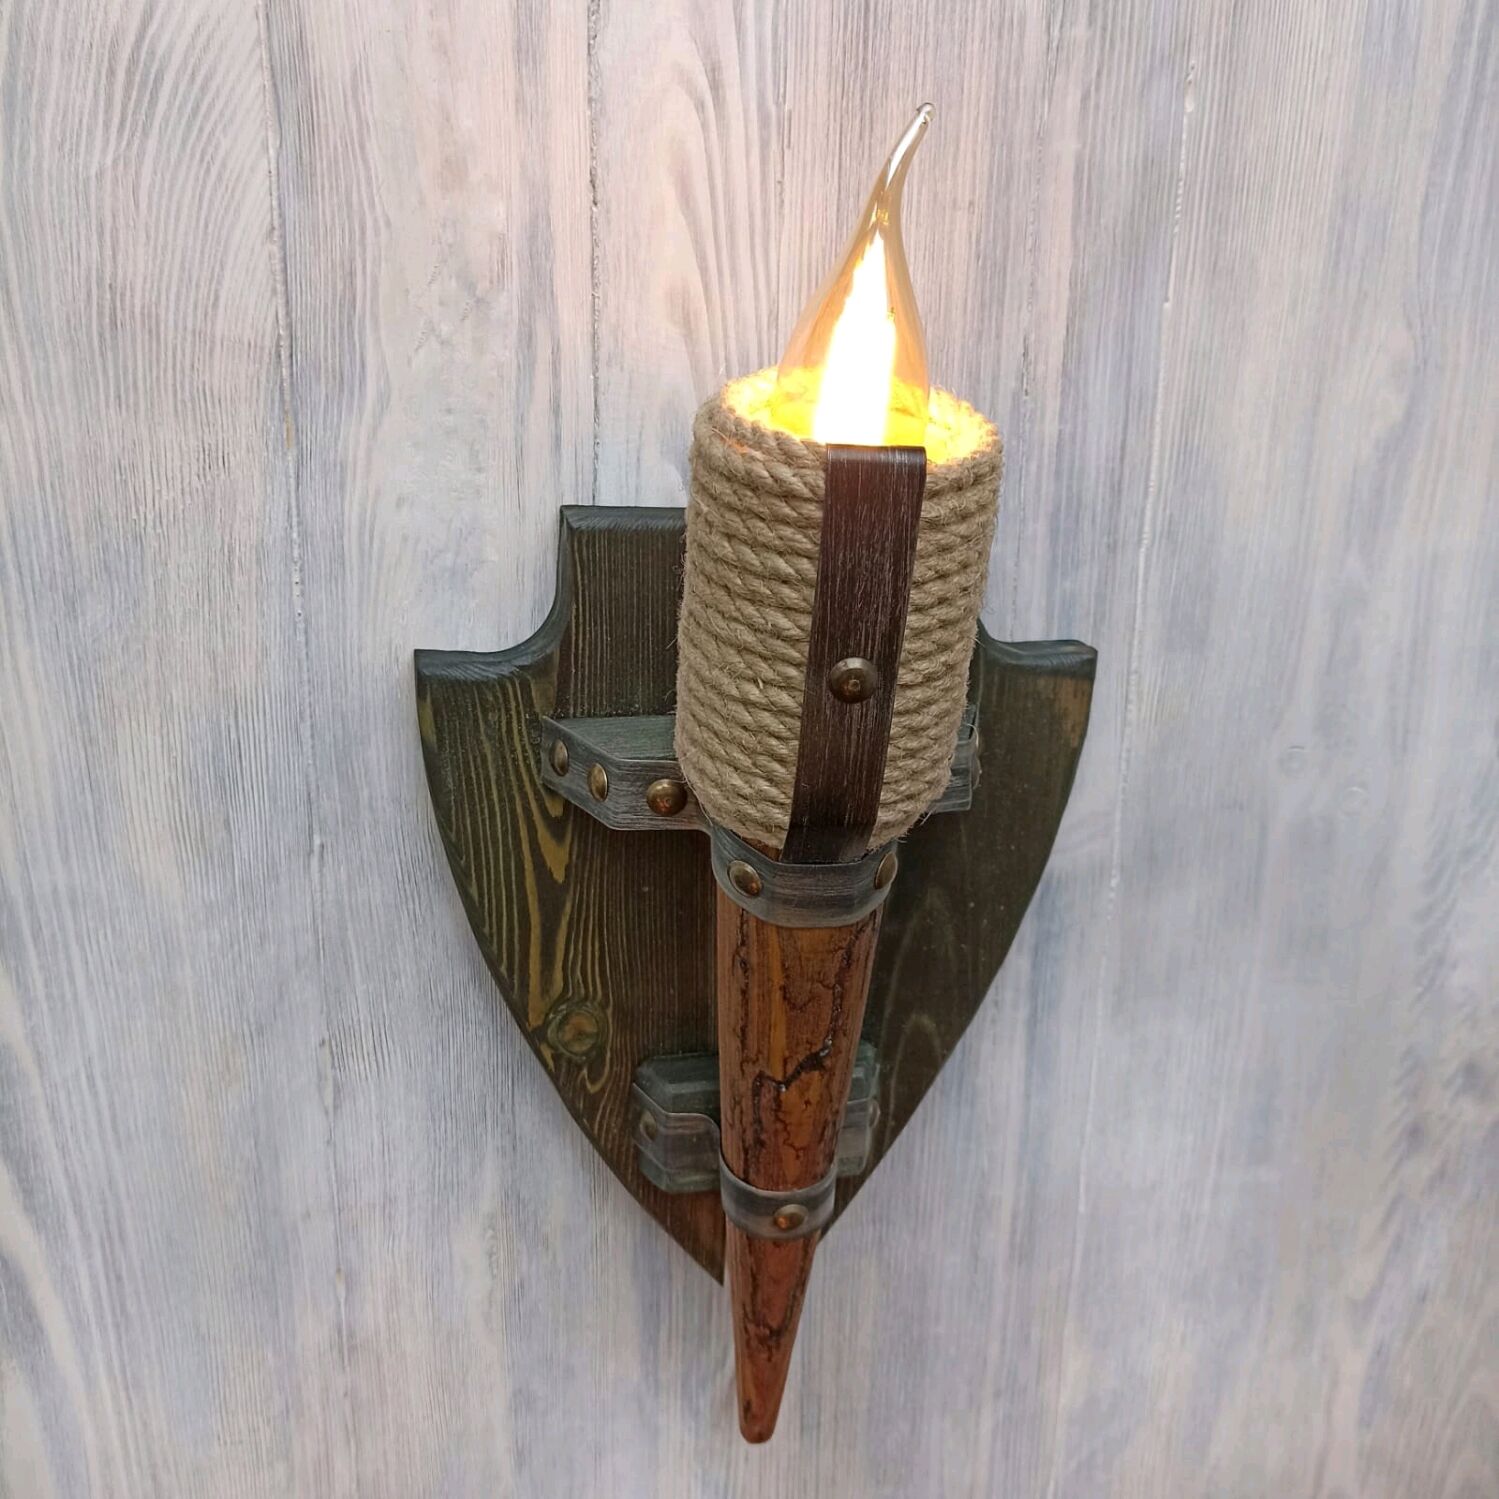 Как изготавливался олимпийский факел Сочи-2014